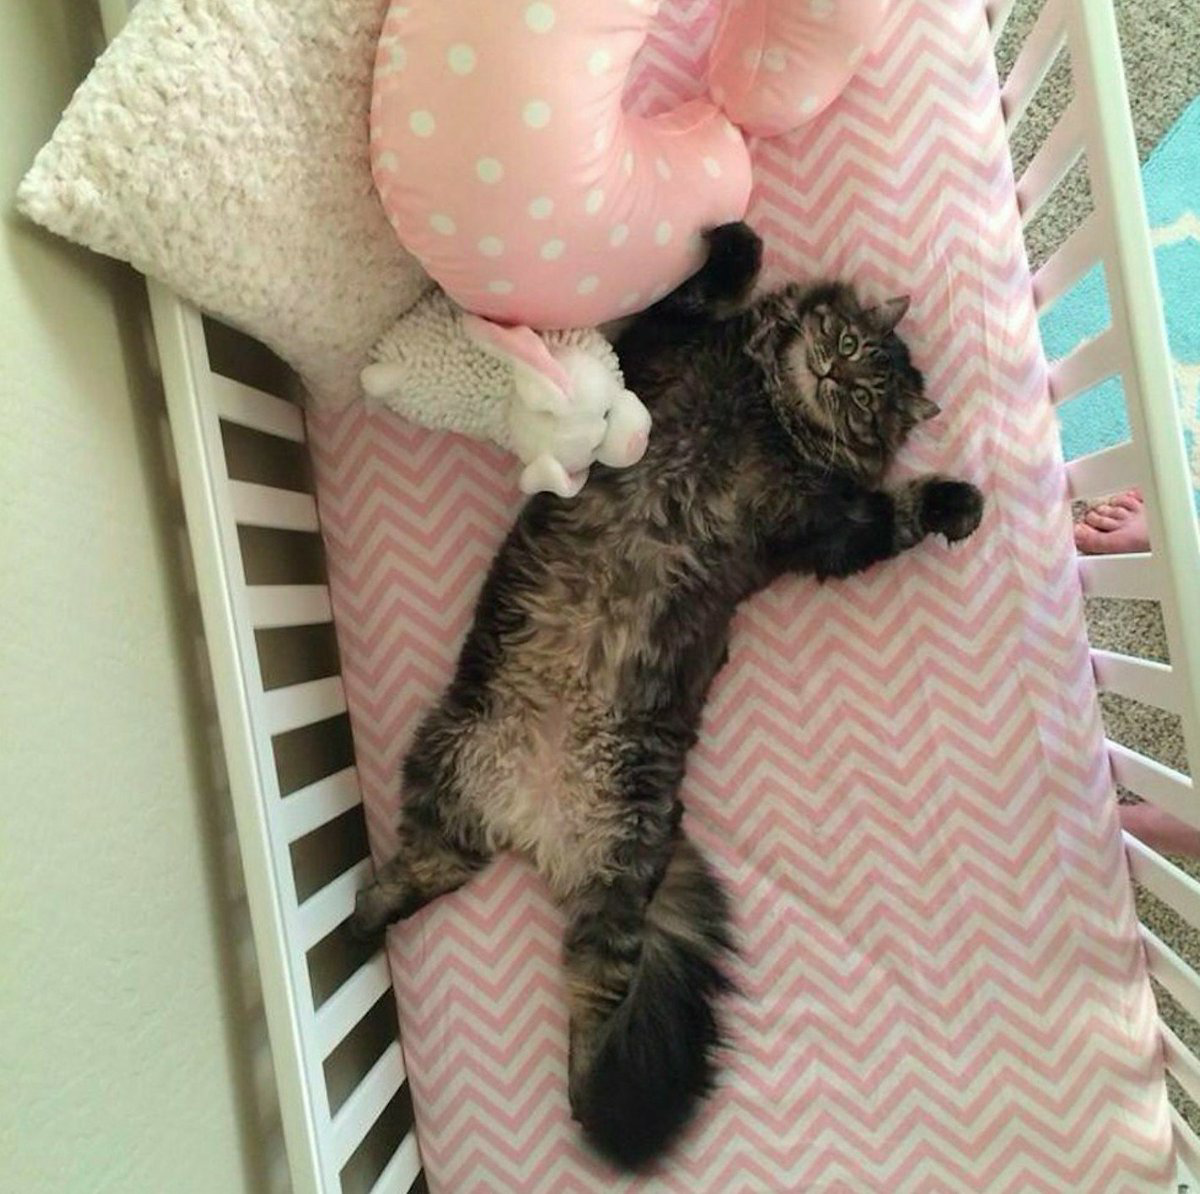 Котенок в кроватке